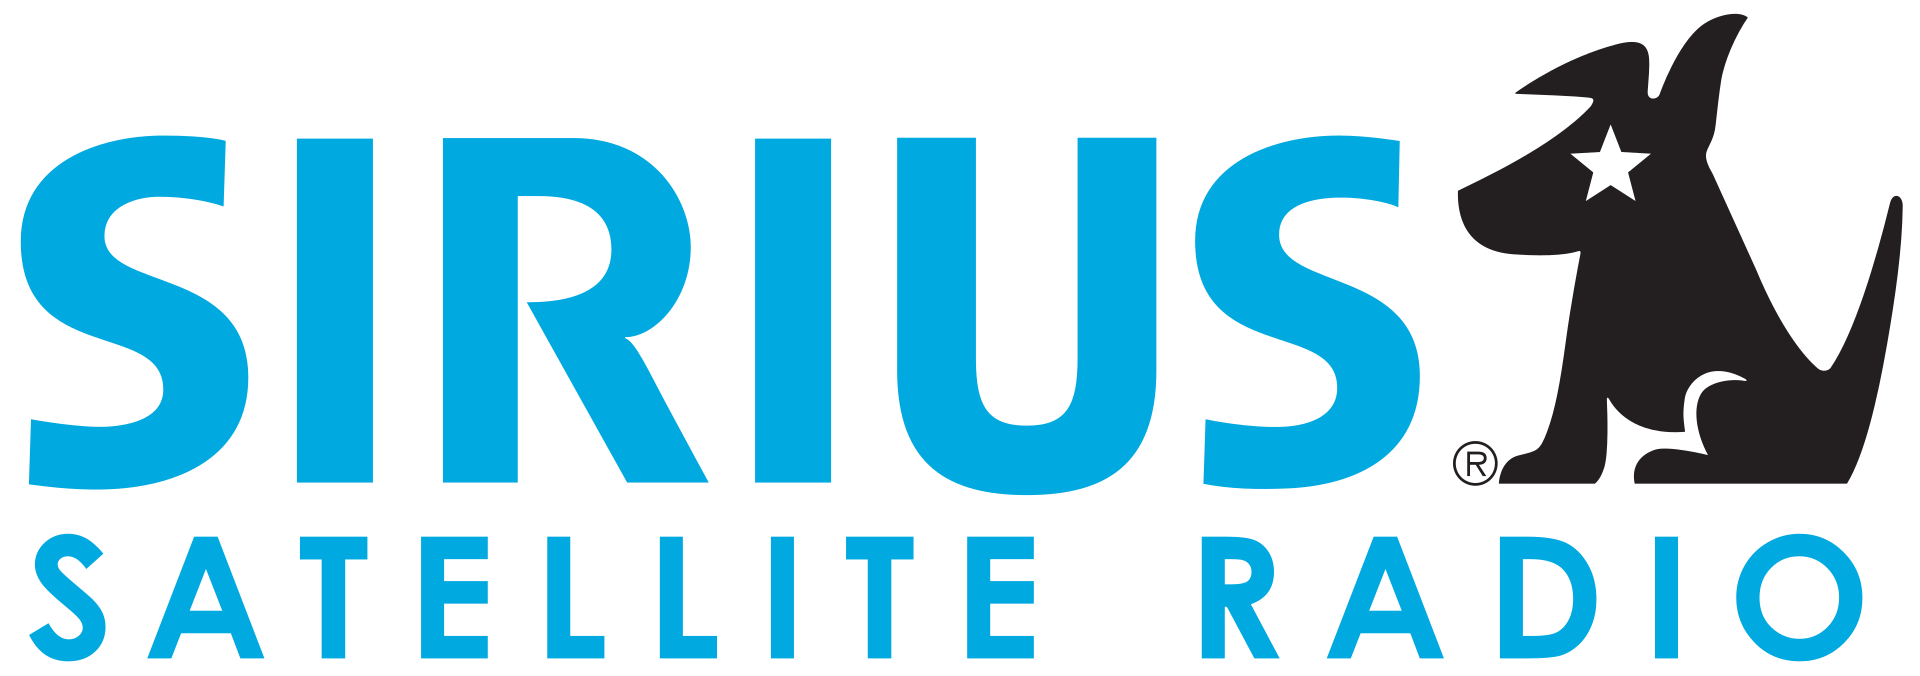 Sirius XM Holdings - Sirius XM Radio - Sirius Satellite Radio - XM Satellite Radio Holdings